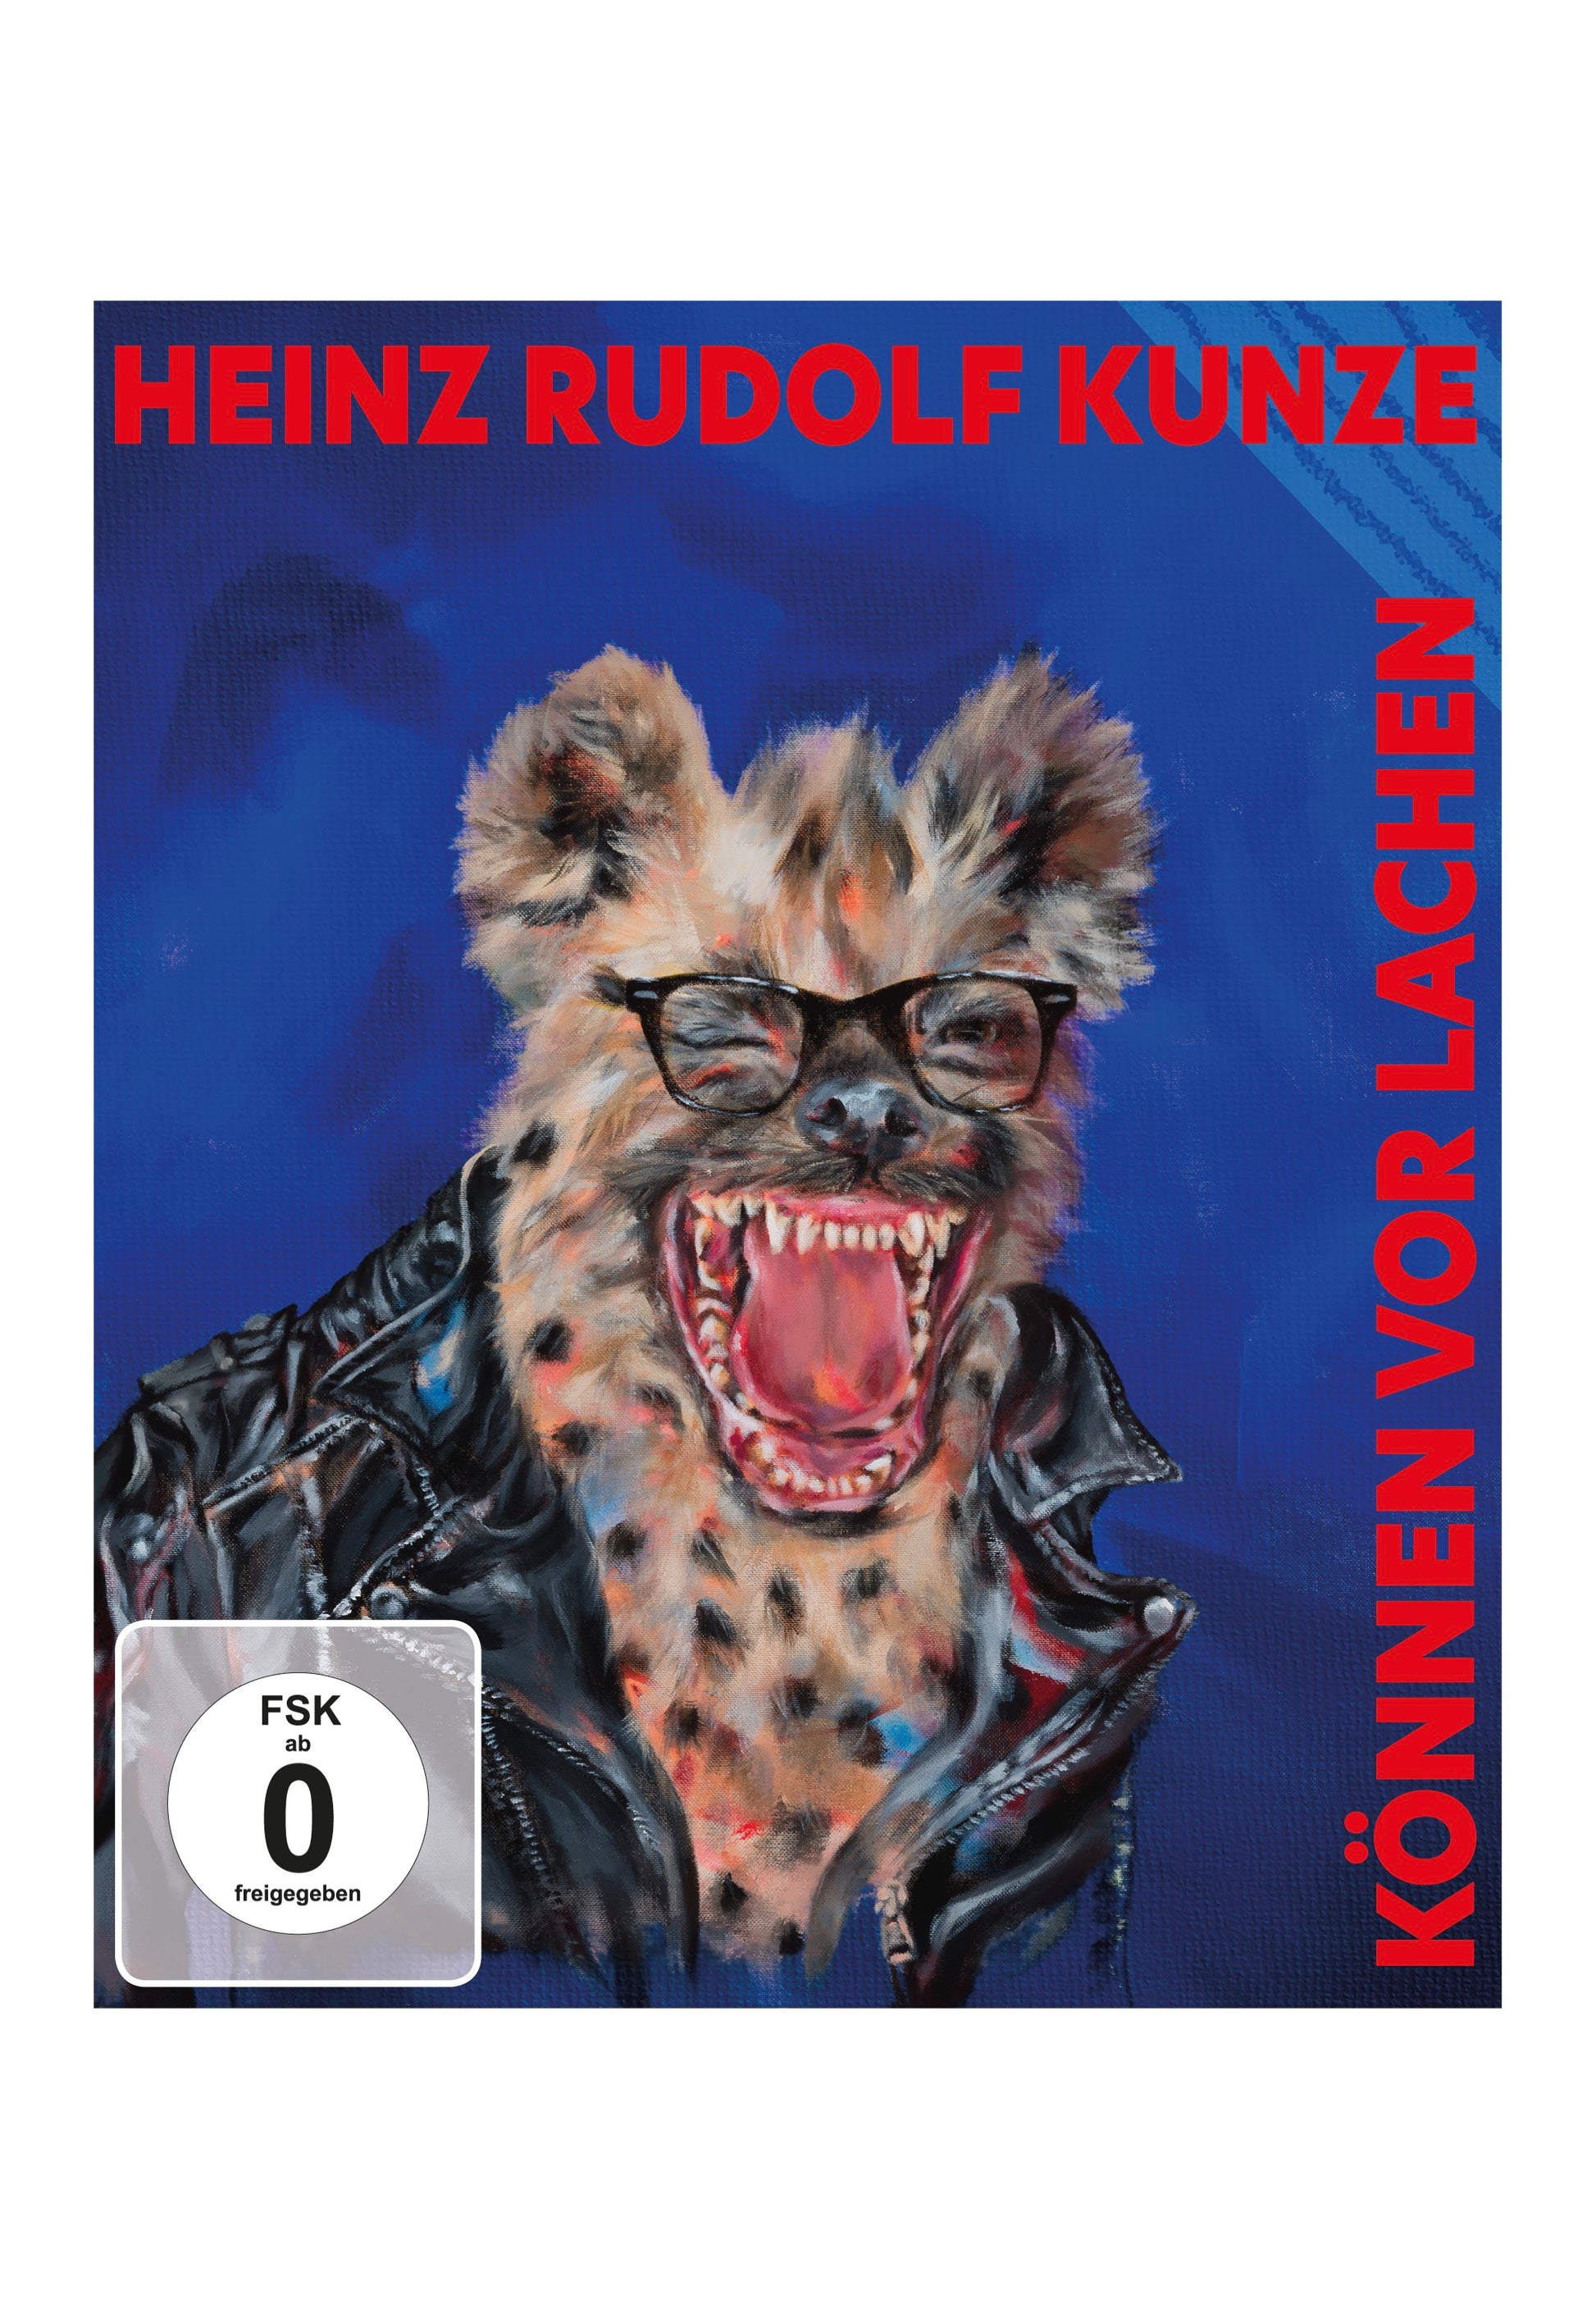 Heinz Rudolf Kunze - Können vor Lachen - CD + Blu Ray